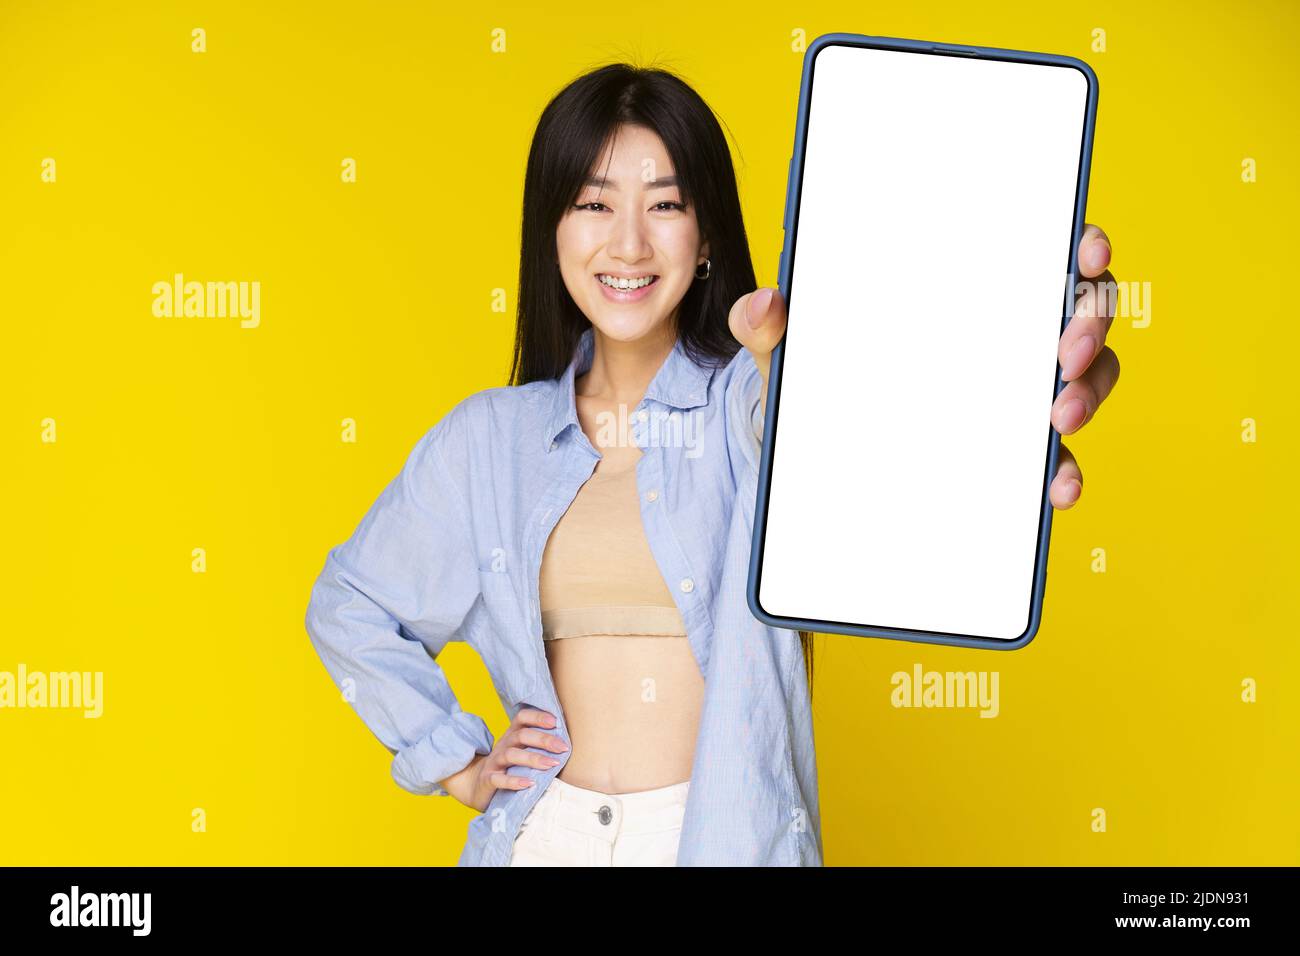 Fille asiatique tenant un smartphone montrant un écran blanc, et sourire excité sur l'appareil photo portant une chemise bleue isolée sur fond jaune. Offre exceptionnelle sur les applications mobiles. Positionnement du produit. Banque D'Images